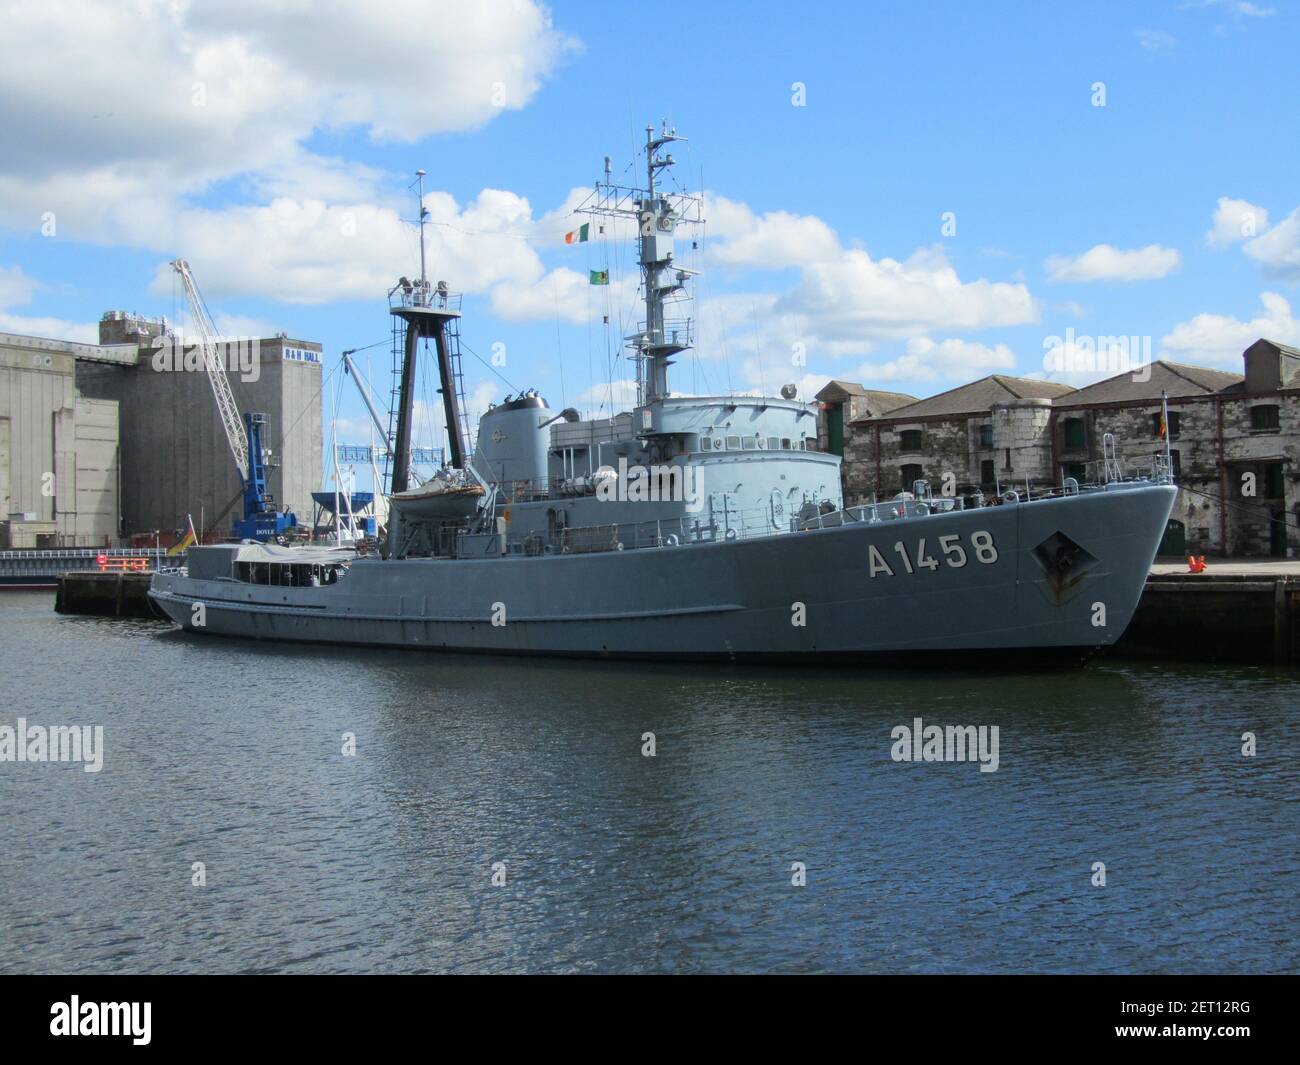 CORK, IRLAND - 14. Aug 2011: Die 'Fehmarn' ist ein großer Bergungsschlepper der deutschen Marine. 1967 in Betrieb genommen, 2011 noch in Betrieb. Besuchen Sie Cork, Stockfoto